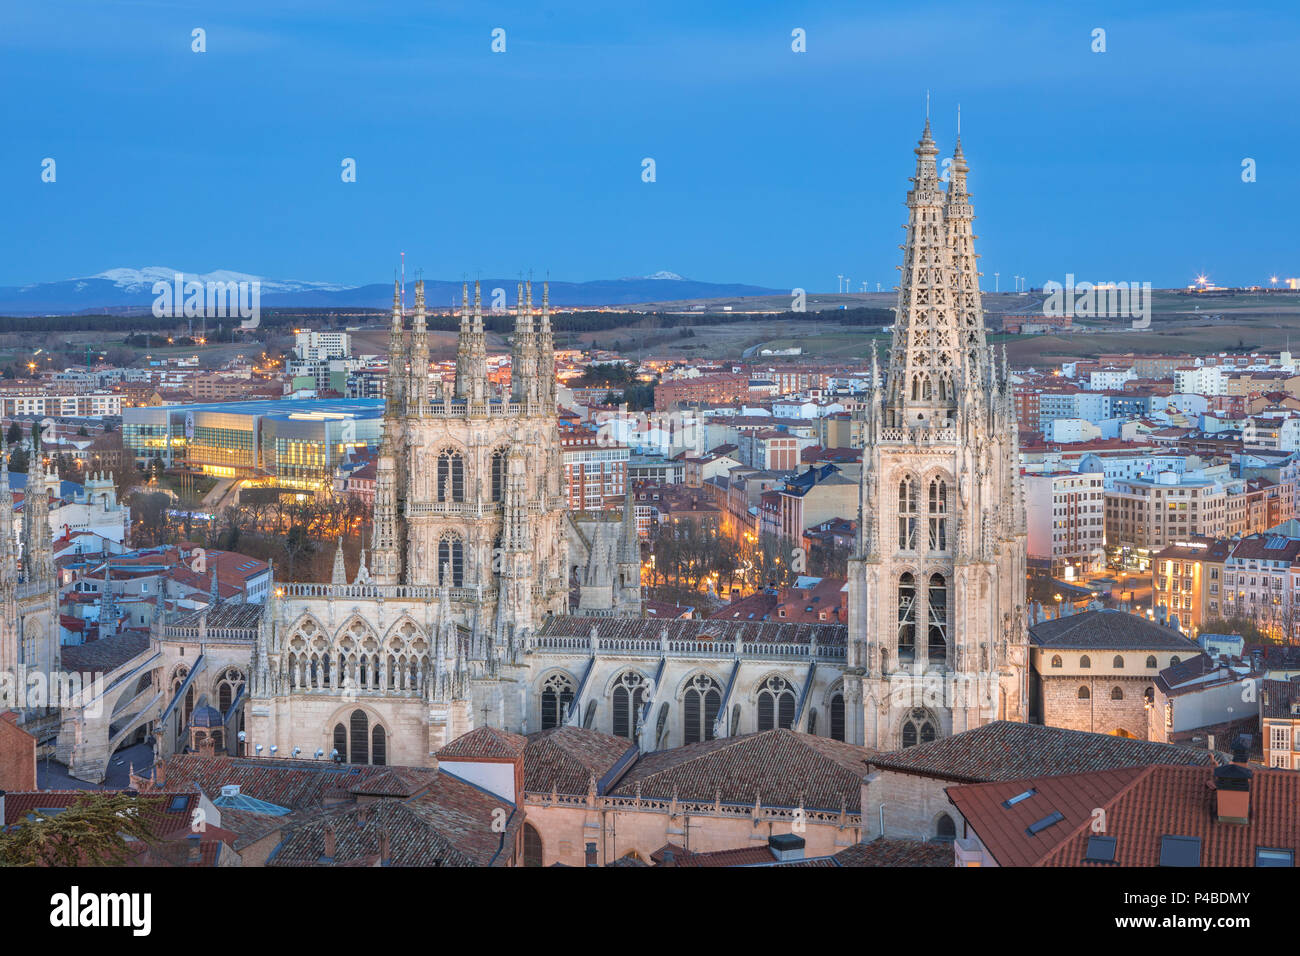 Spanien, Burgos Stadt, Kathedrale von Burgos, UNESCO - Welterbe Stockfoto